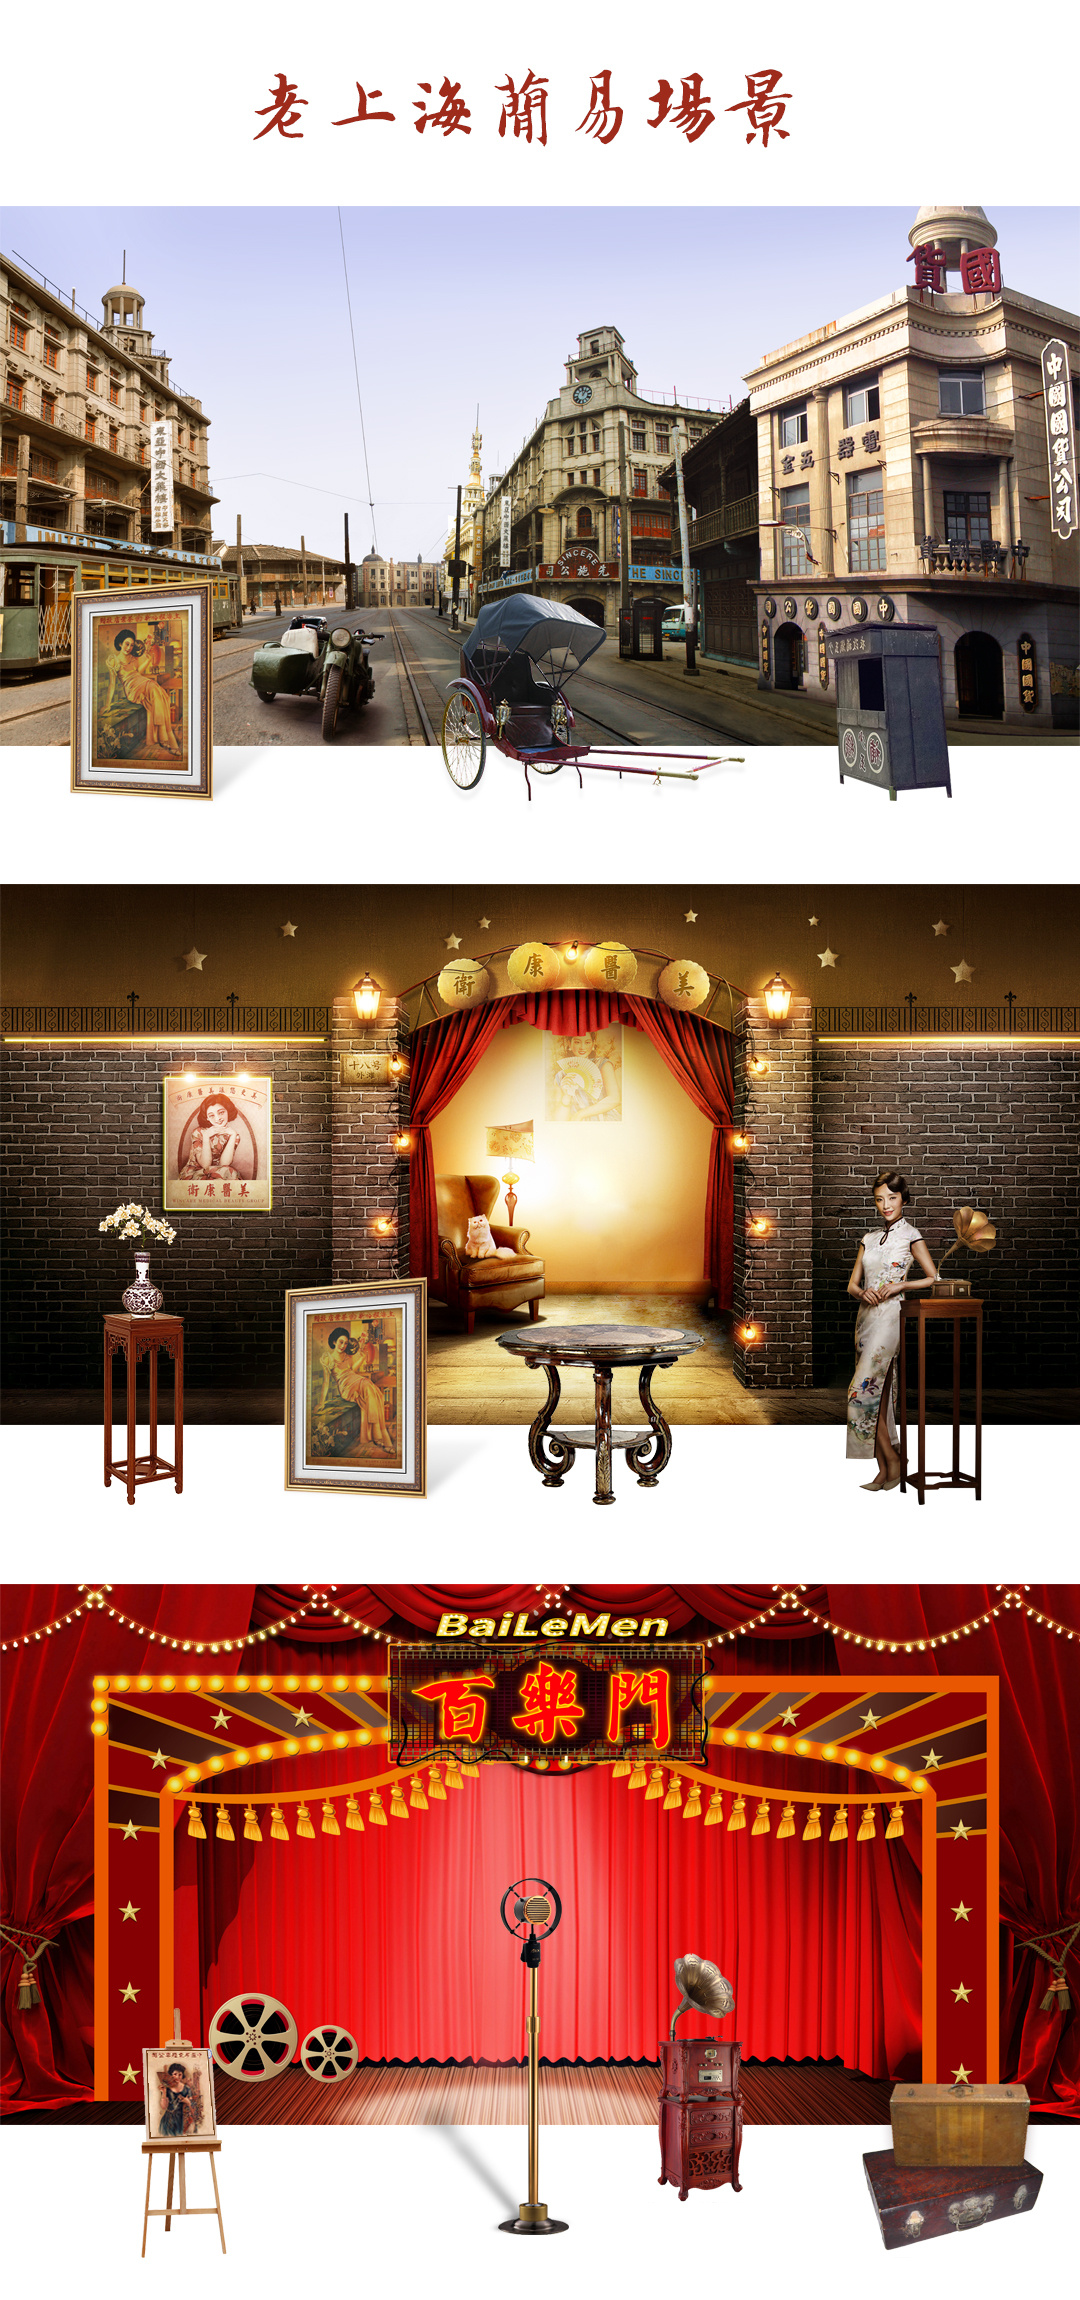 老上海展览喷绘简易场景舞台夜上海黄包车留声机旗袍